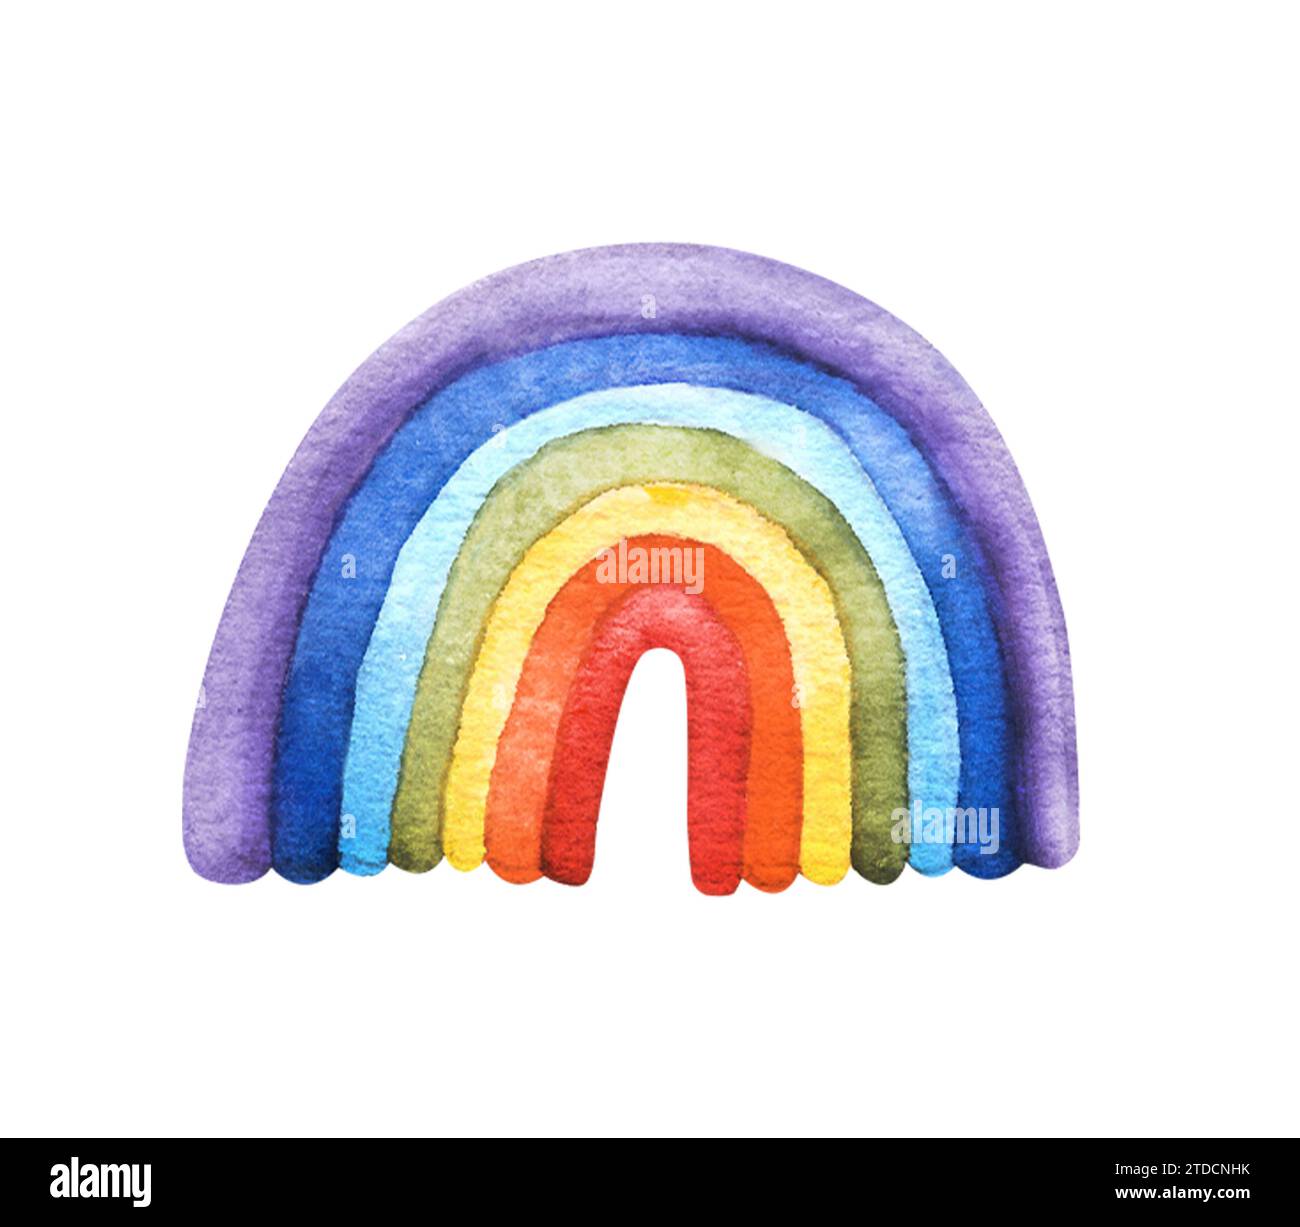 Aquarell handgezeichnete Regenbogen-Illustration. Perfekt für kreative Projekte, von Postkarten und Postern über Webdesign, Geburtstag, Stolz-LGBT-Party, Logo Stockfoto